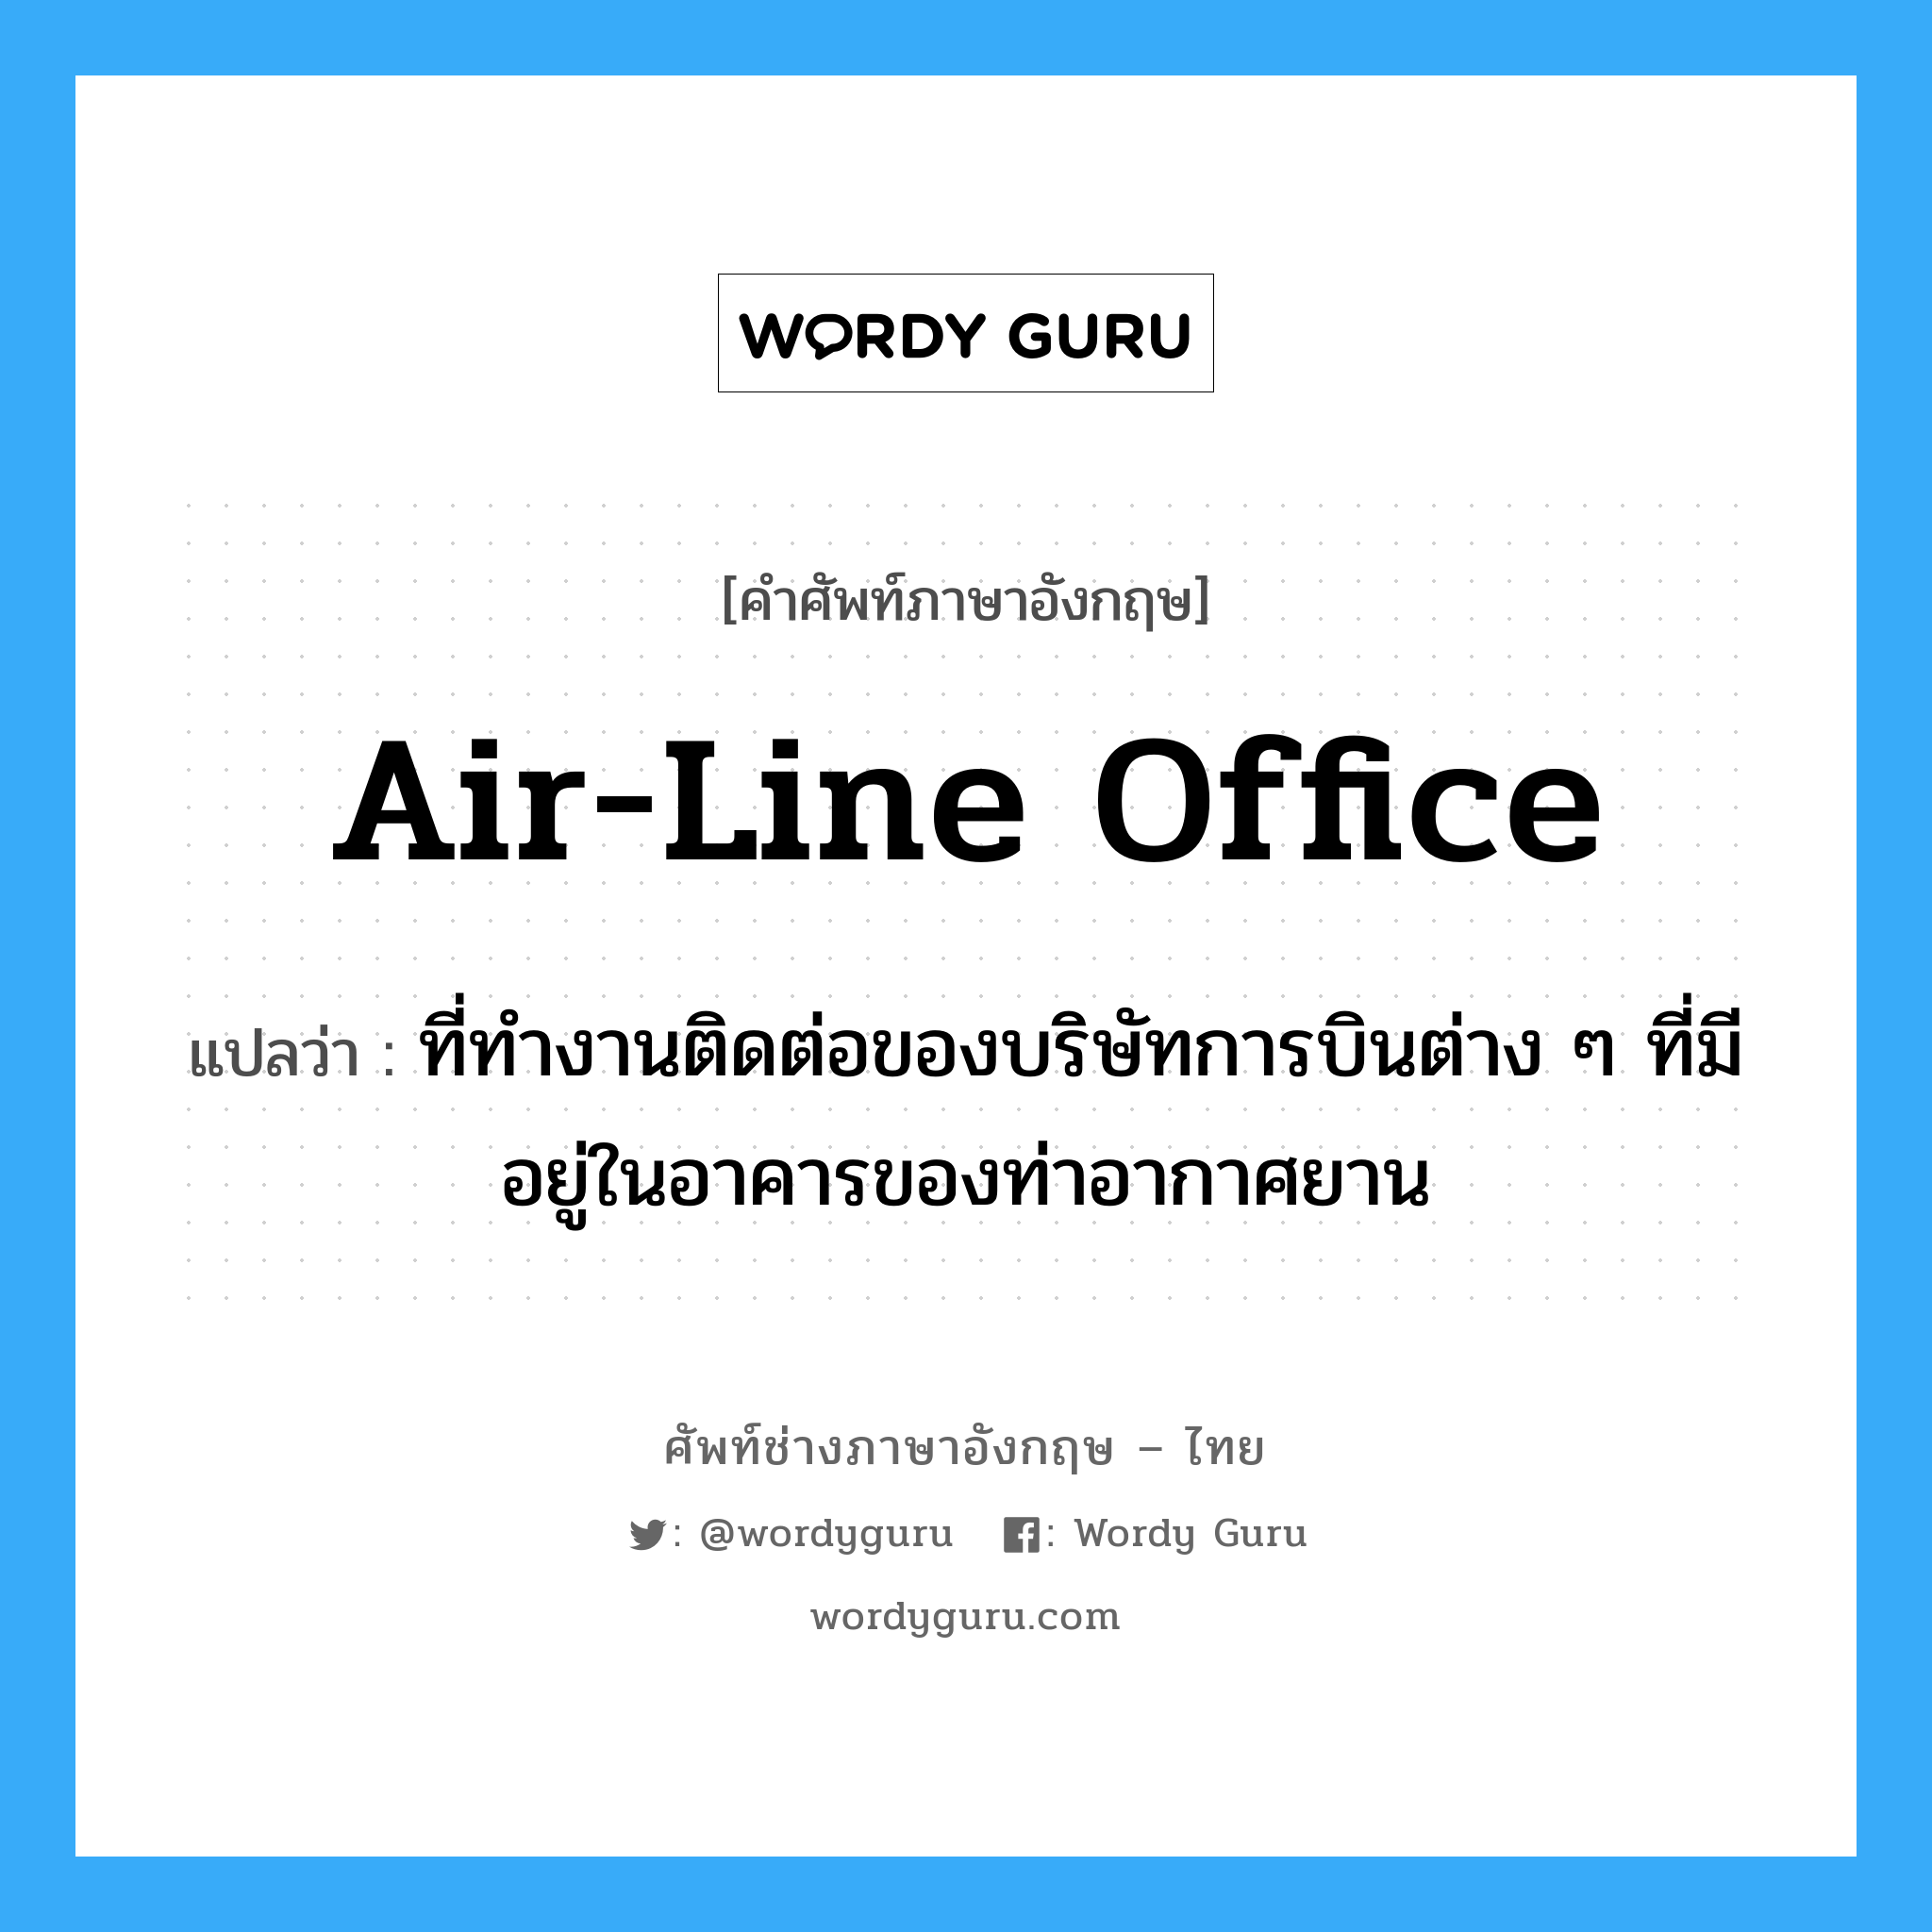 air-line office แปลว่า?, คำศัพท์ช่างภาษาอังกฤษ - ไทย air-line office คำศัพท์ภาษาอังกฤษ air-line office แปลว่า ที่ทำงานติดต่อของบริษัทการบินต่าง ๆ ที่มีอยู่ในอาคารของท่าอากาศยาน